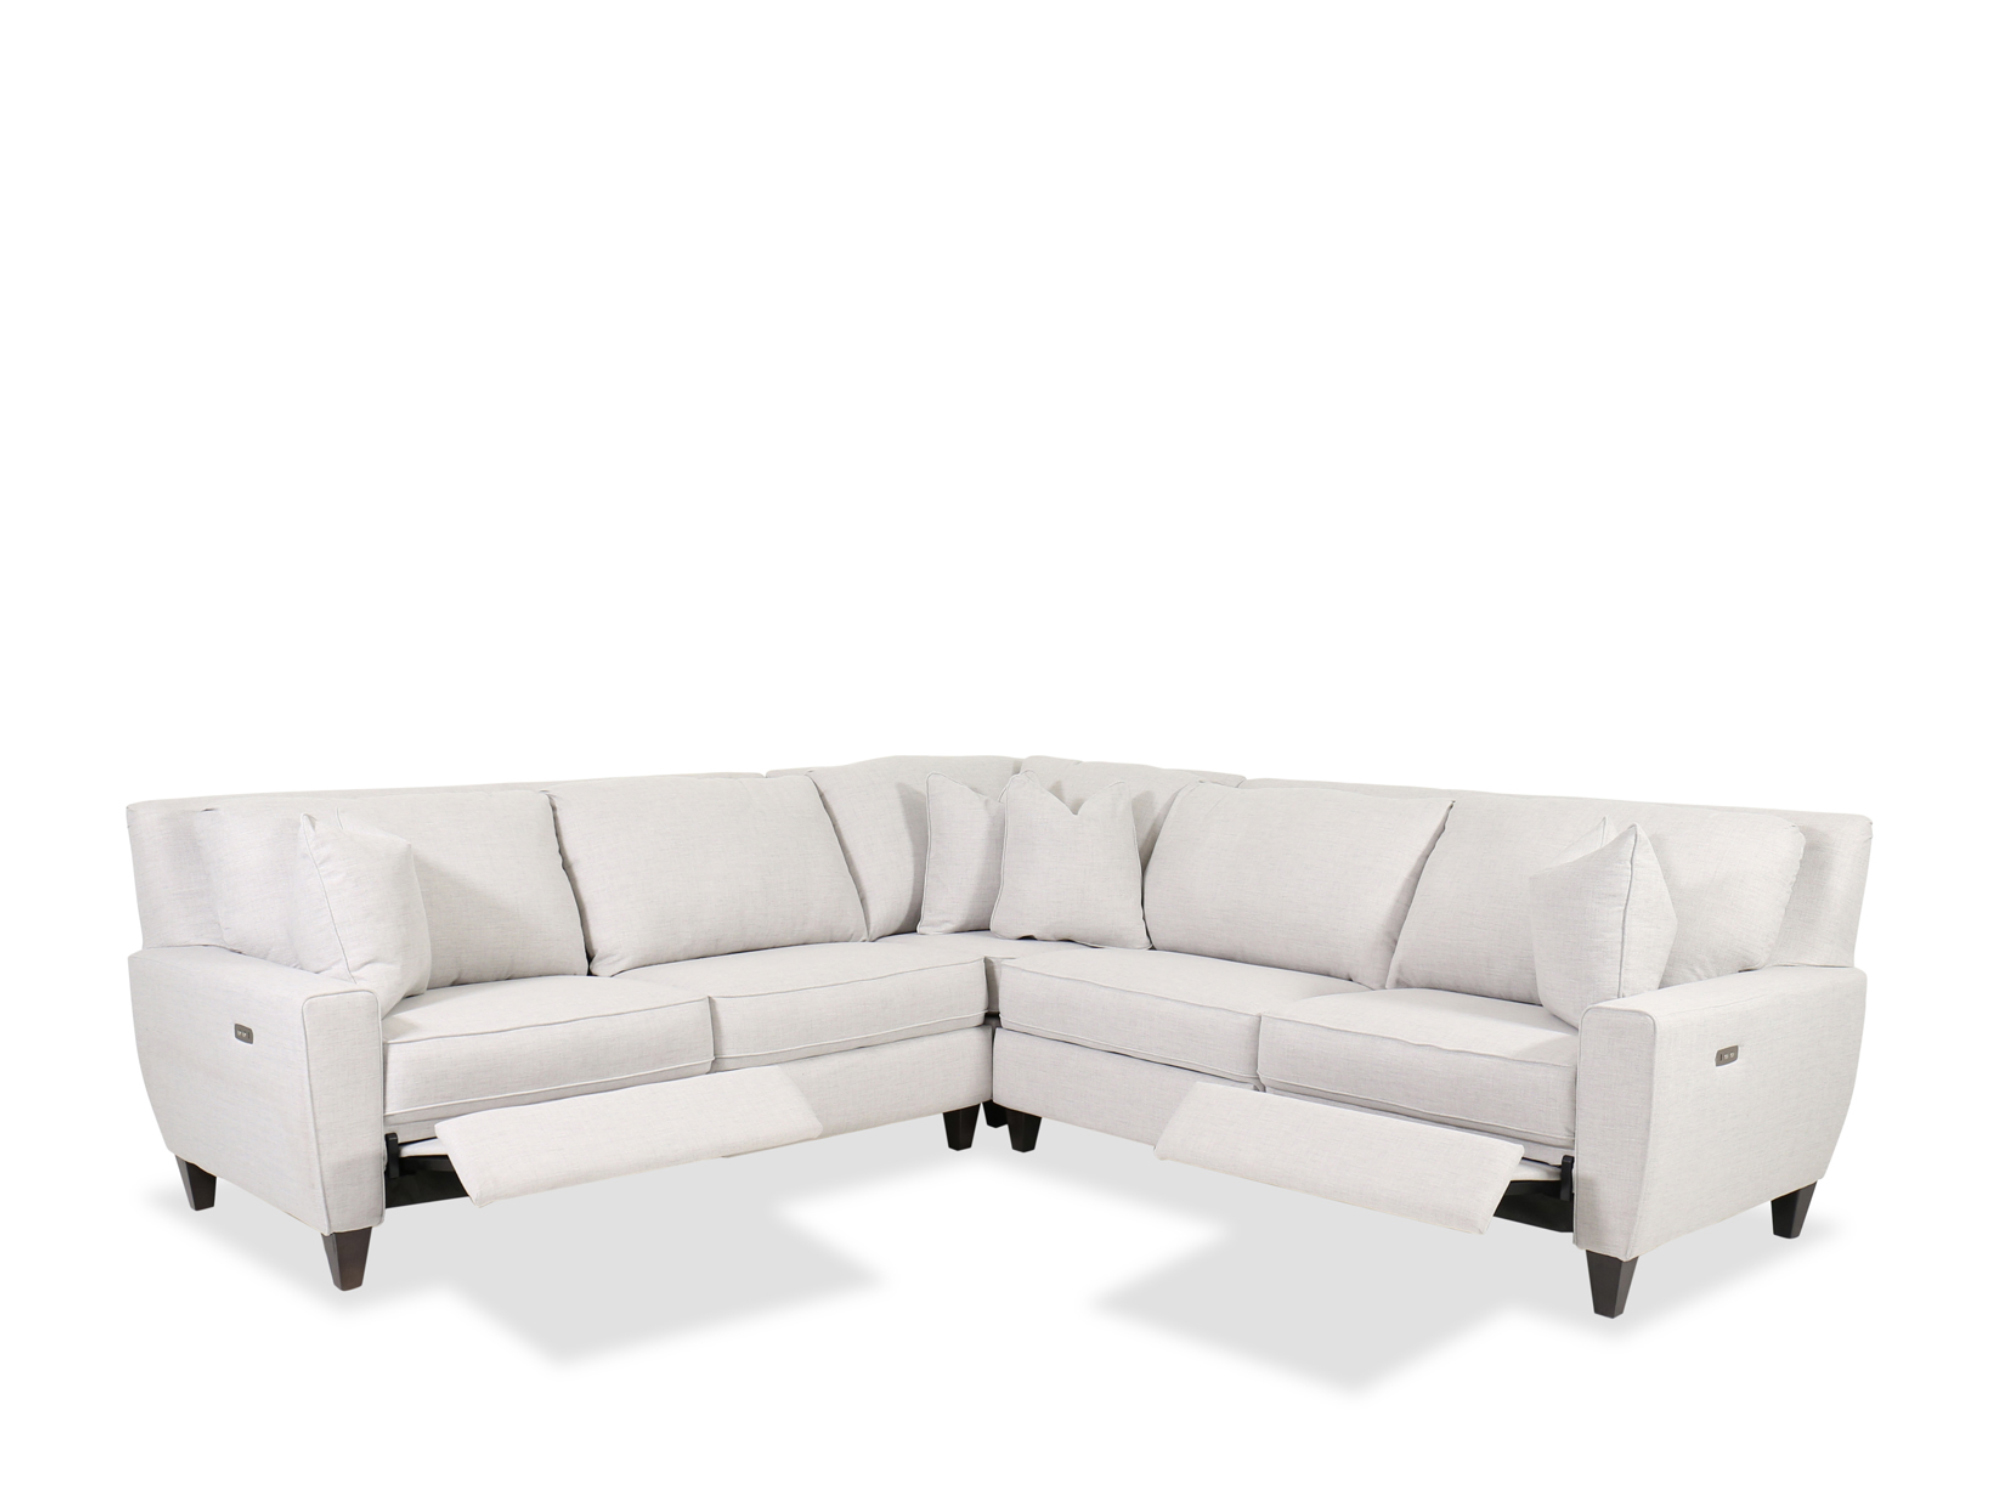 La-Z-Boy Meyer Sofa with Tempur-response Memory Foam Seat Cushions